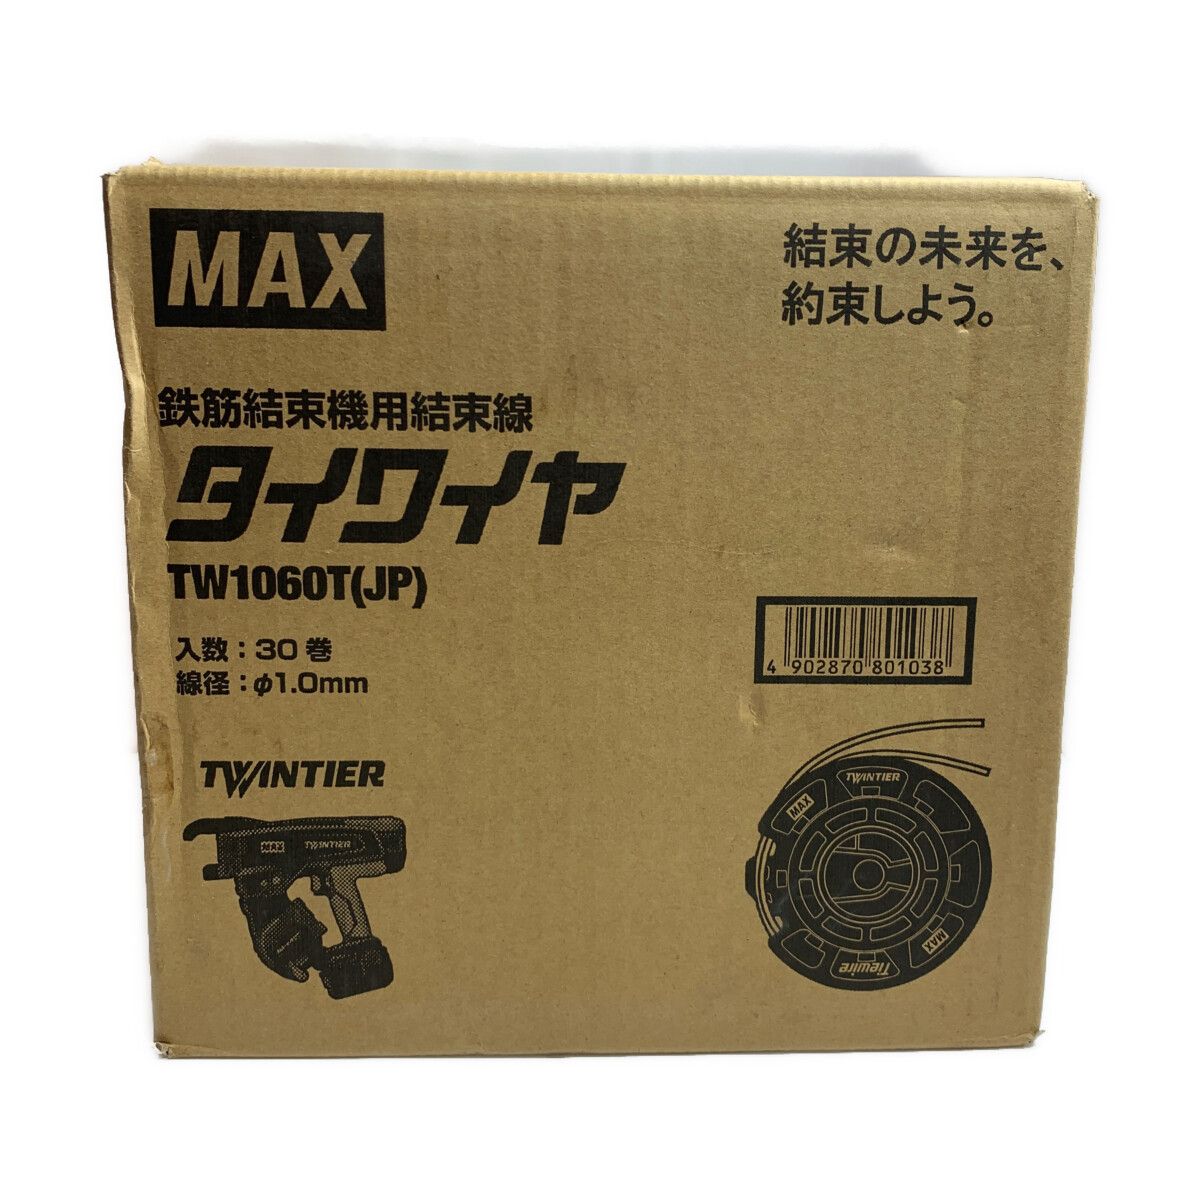 一部予約販売中】 MAXタイワイヤ 1箱 30巻 general-bond.co.jp